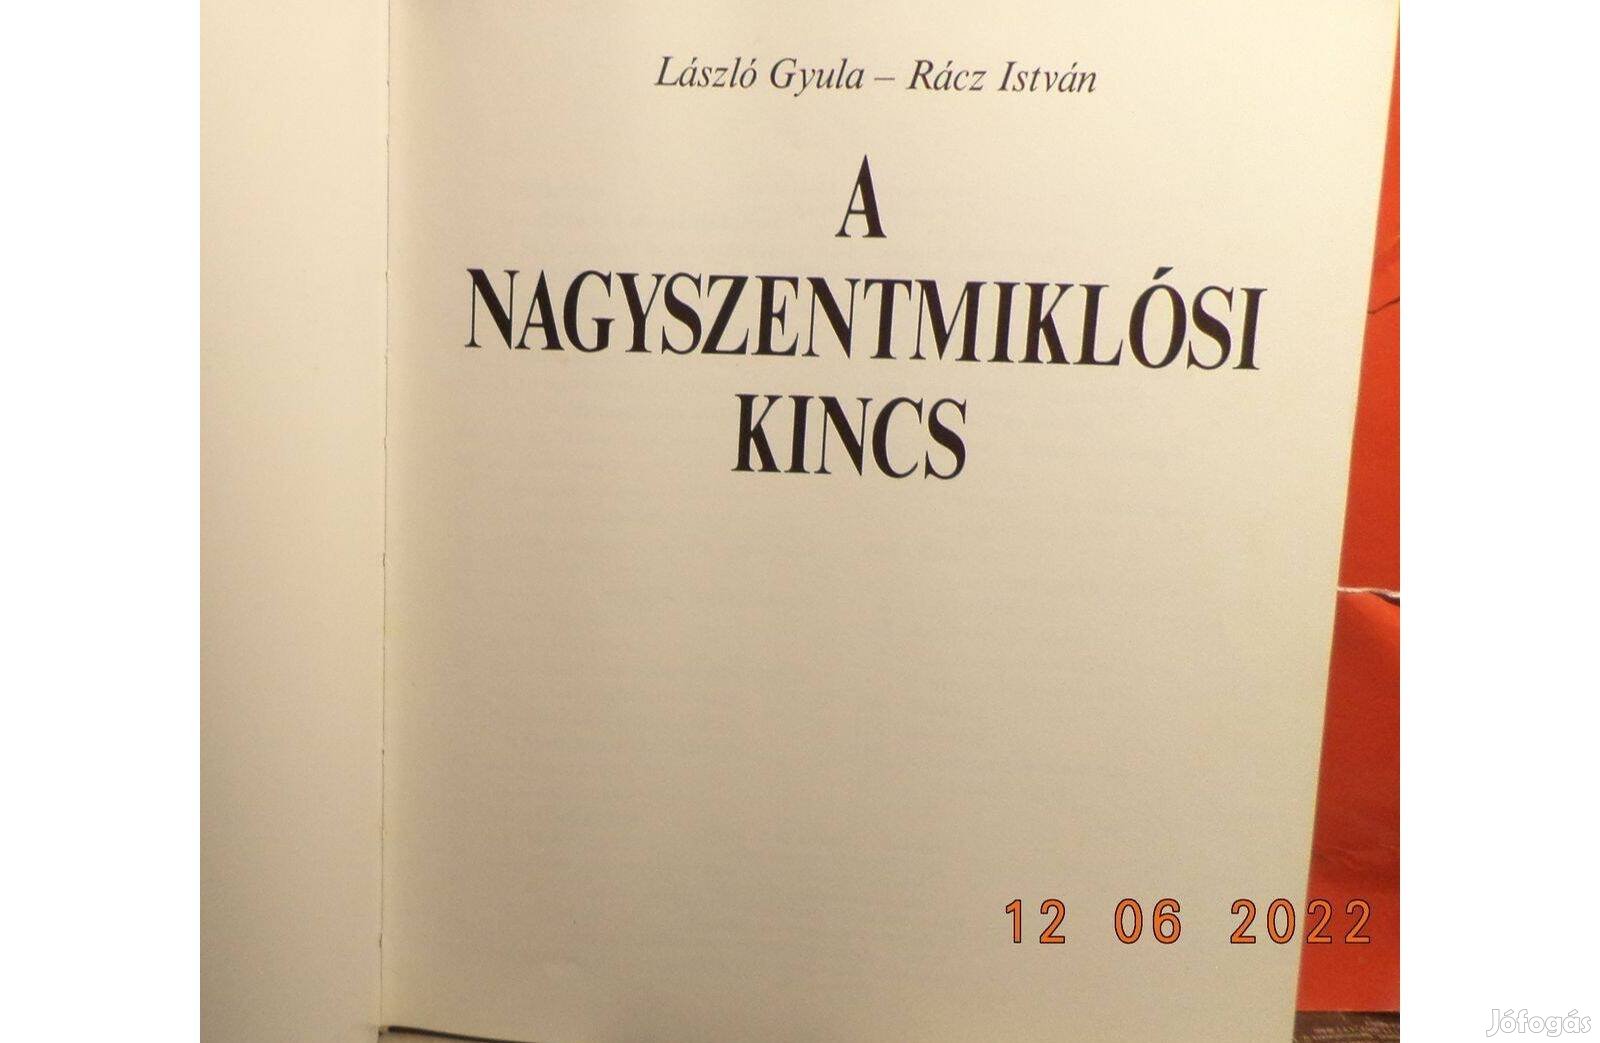 László Gyula - Rácz István: A Nagyszentmiklósi kincs